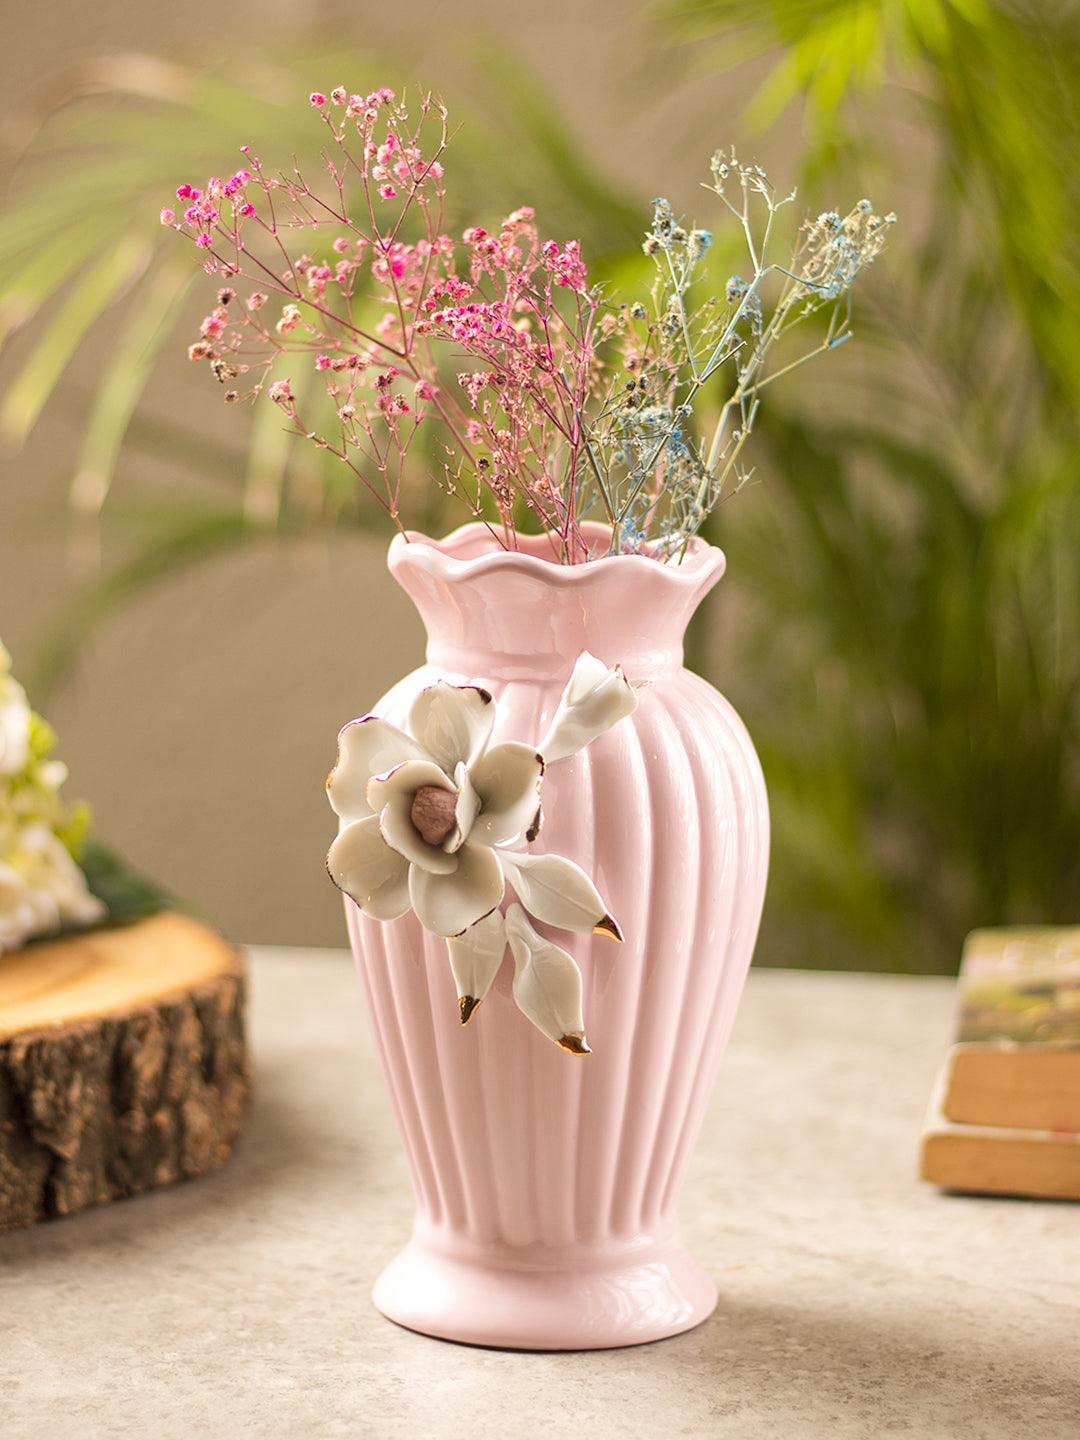 http://market99.com/cdn/shop/products/light-pink-ceramic-curvy-vase-engraved-floral-pattern-flower-holder-vases-1-29122138603690.jpg?v=1697016195